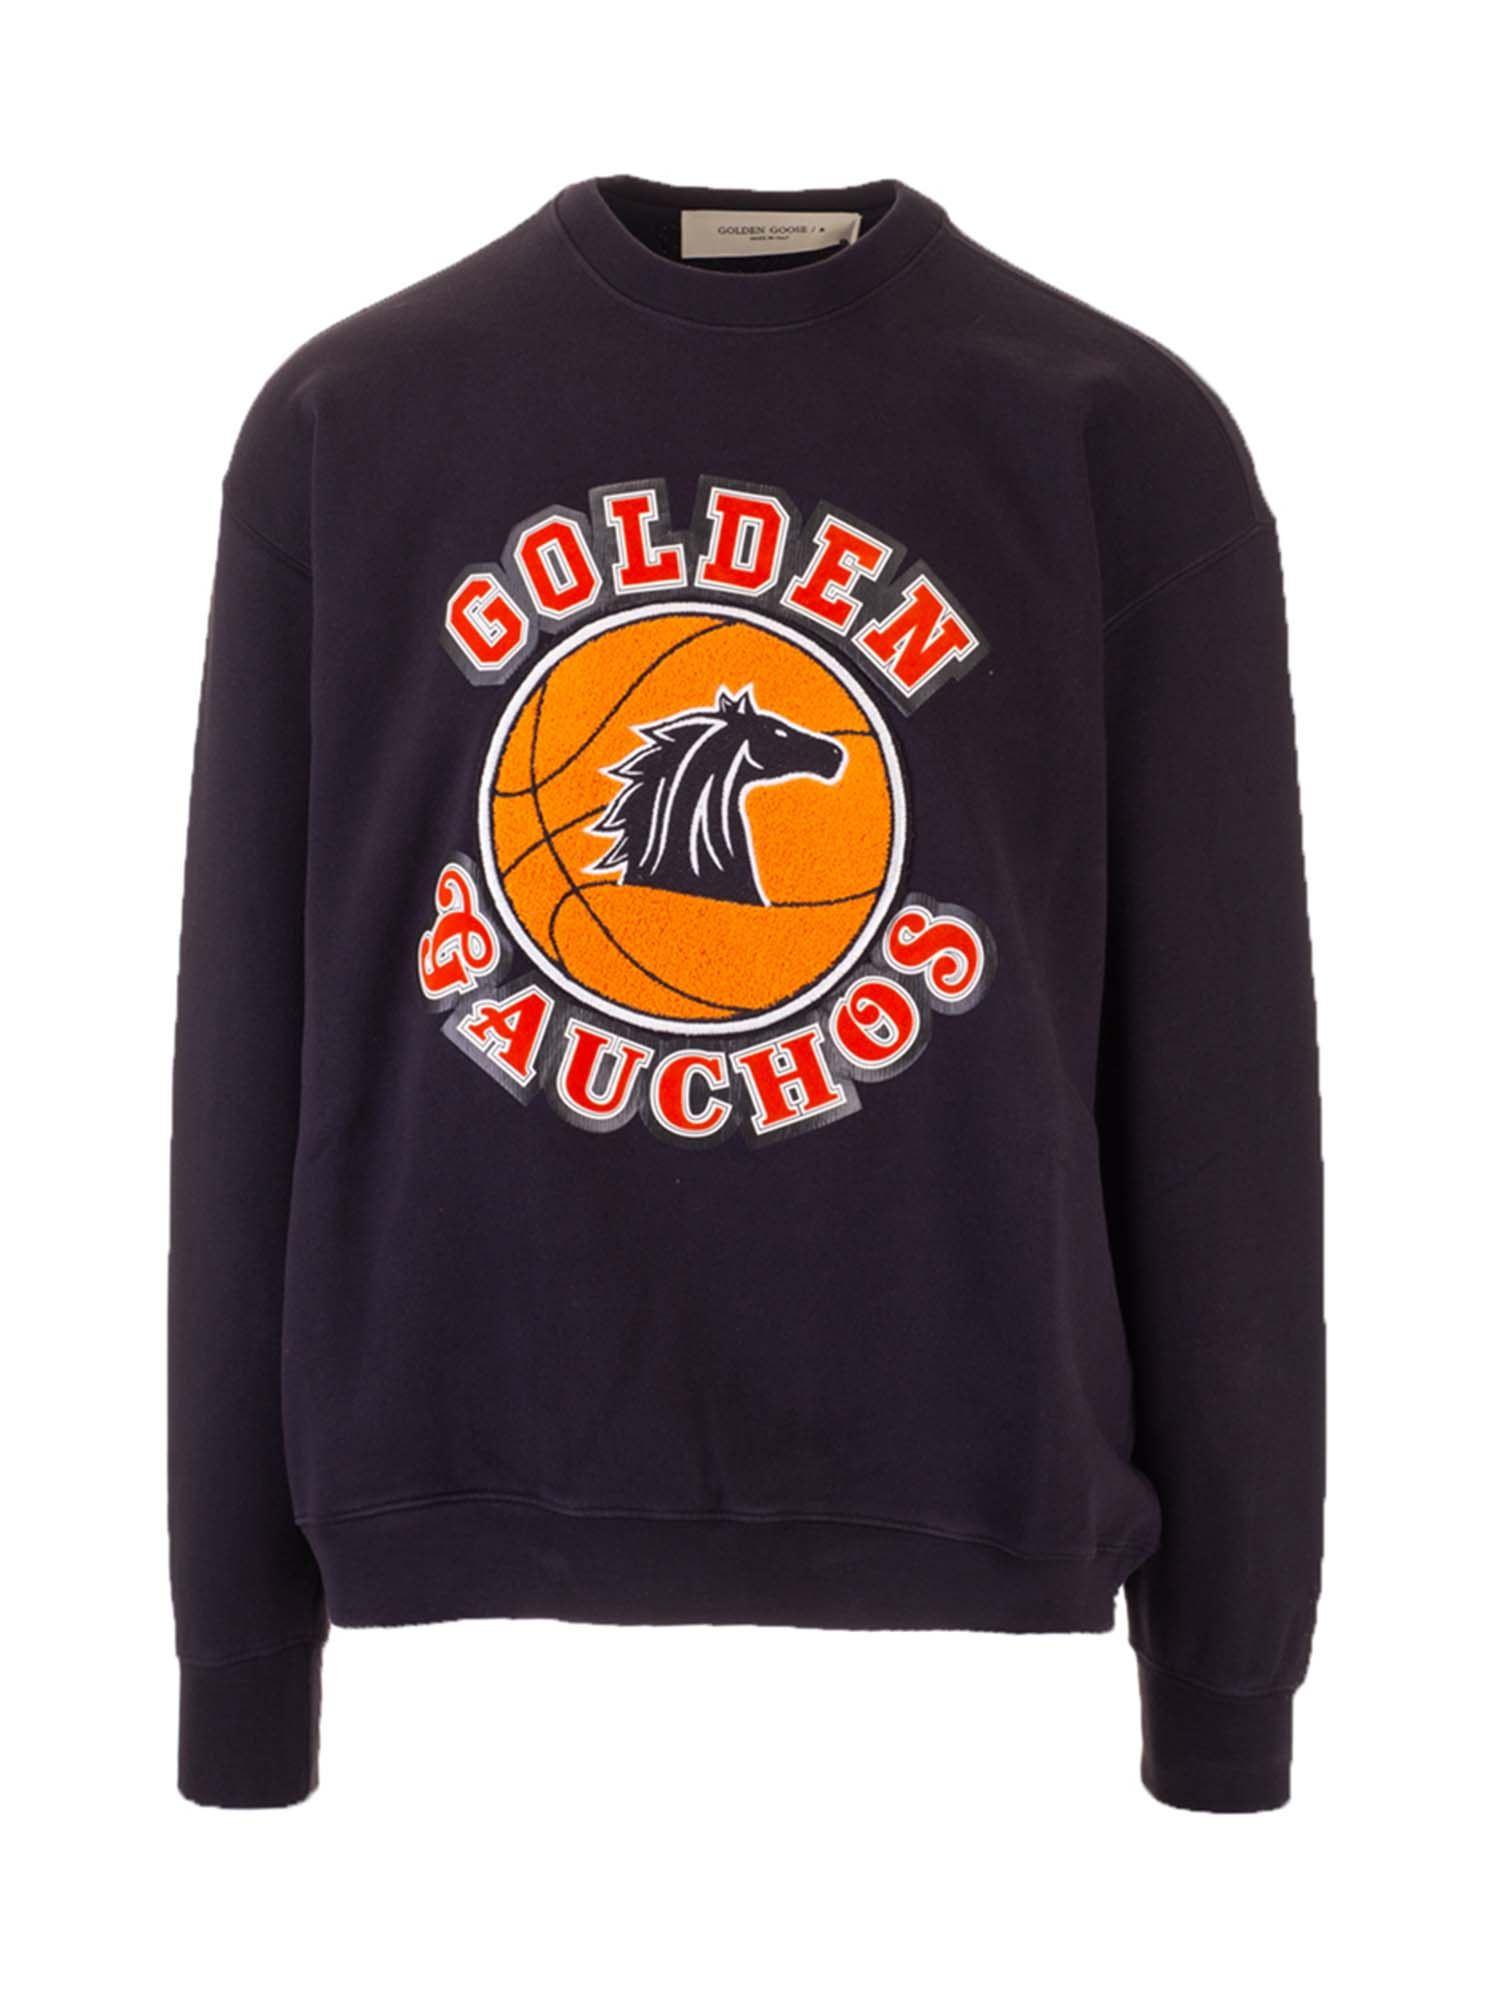 Golden Goose Deluxe Brand Crewneck Sweatshirt in Blue for Men - Lyst